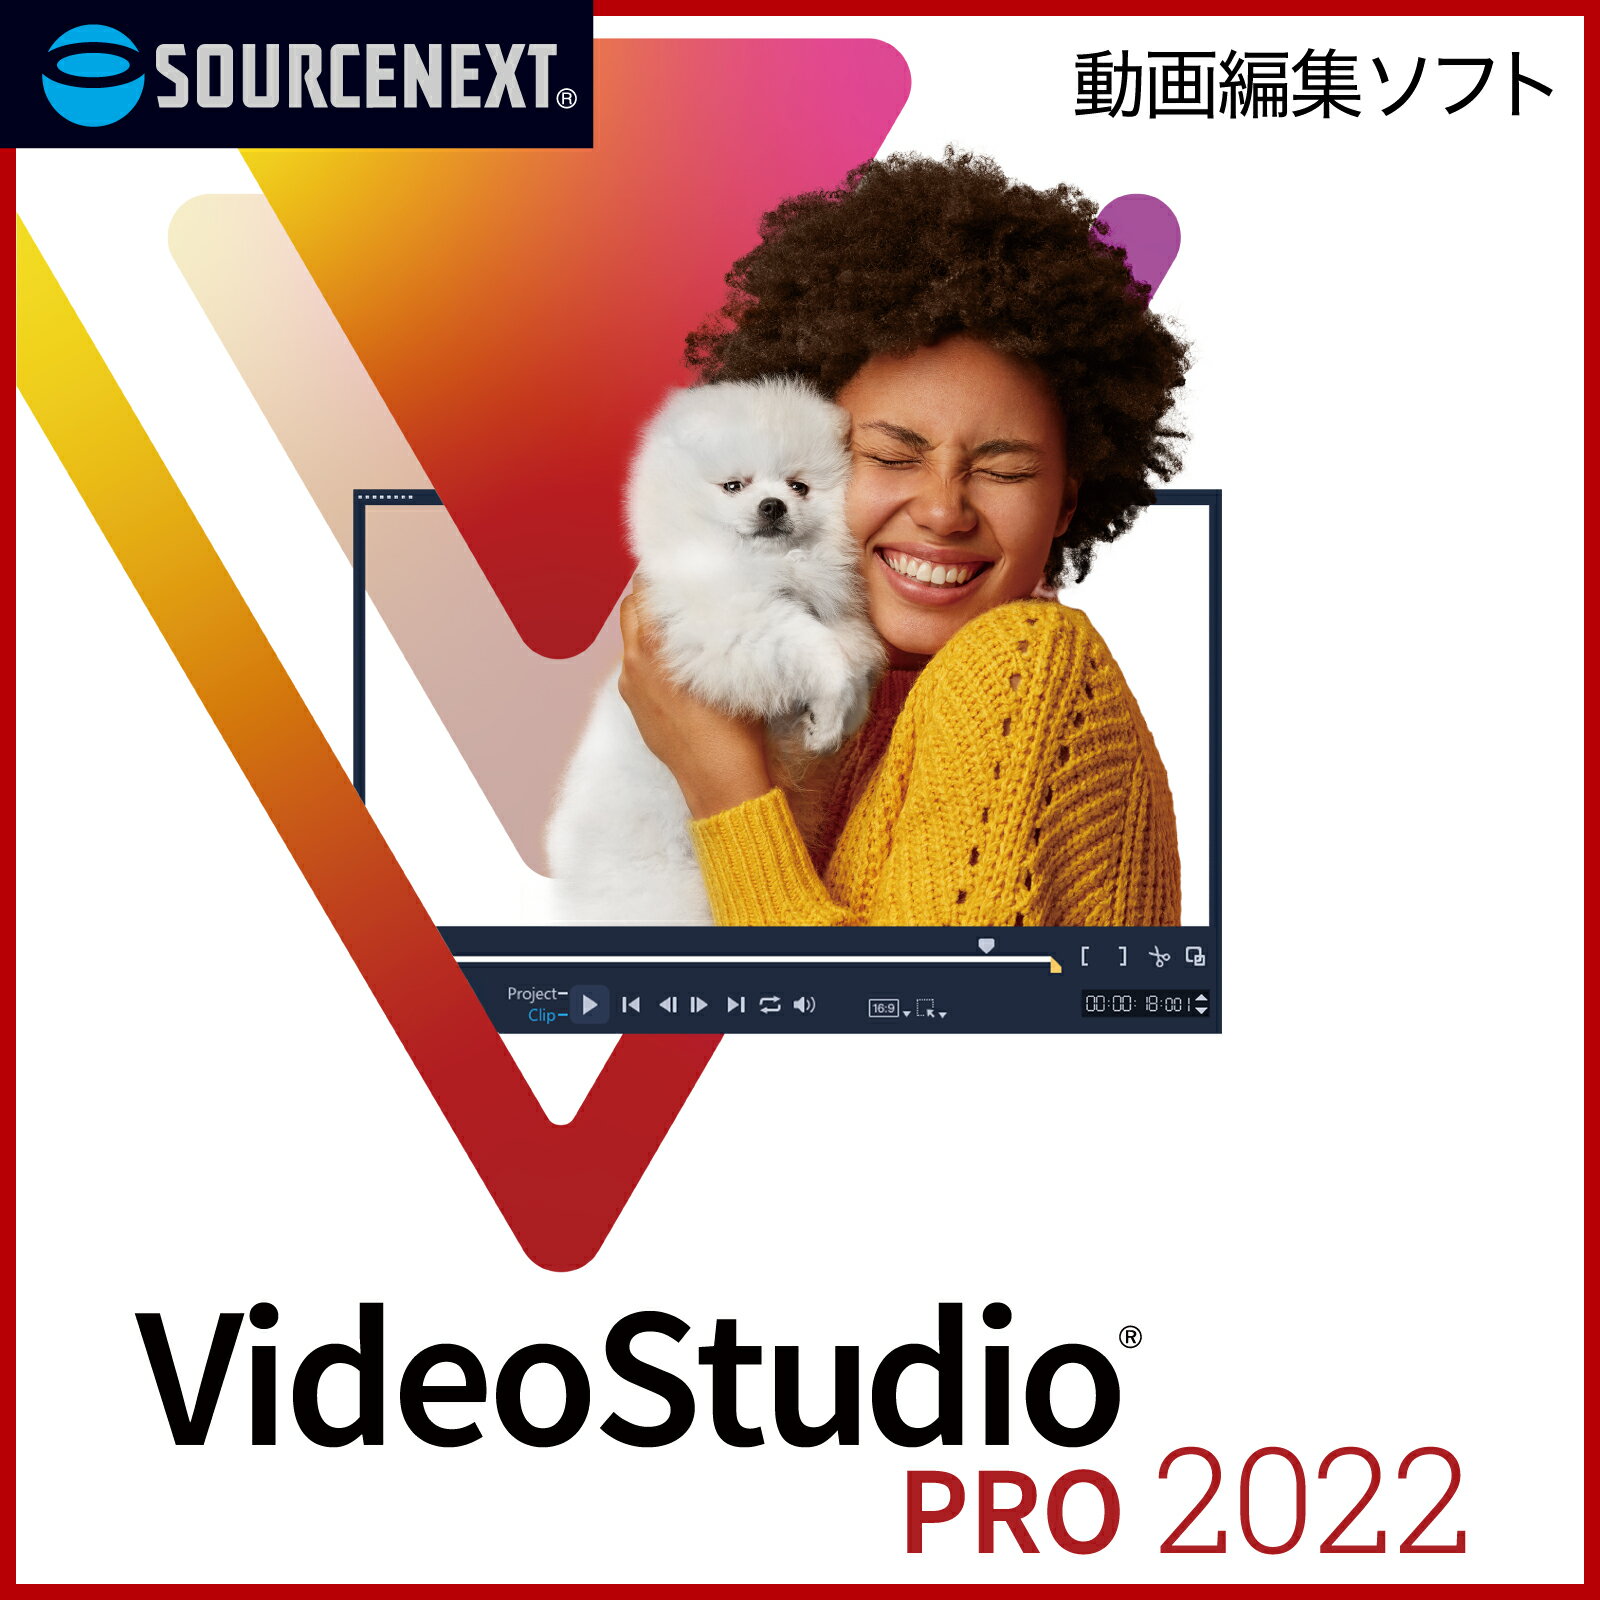 (旧版)VideoStudio Pro 2022COREL　コーレル　ビデオ編集　スライドショー作成　DVD作成　ソースネクスト　送料無料